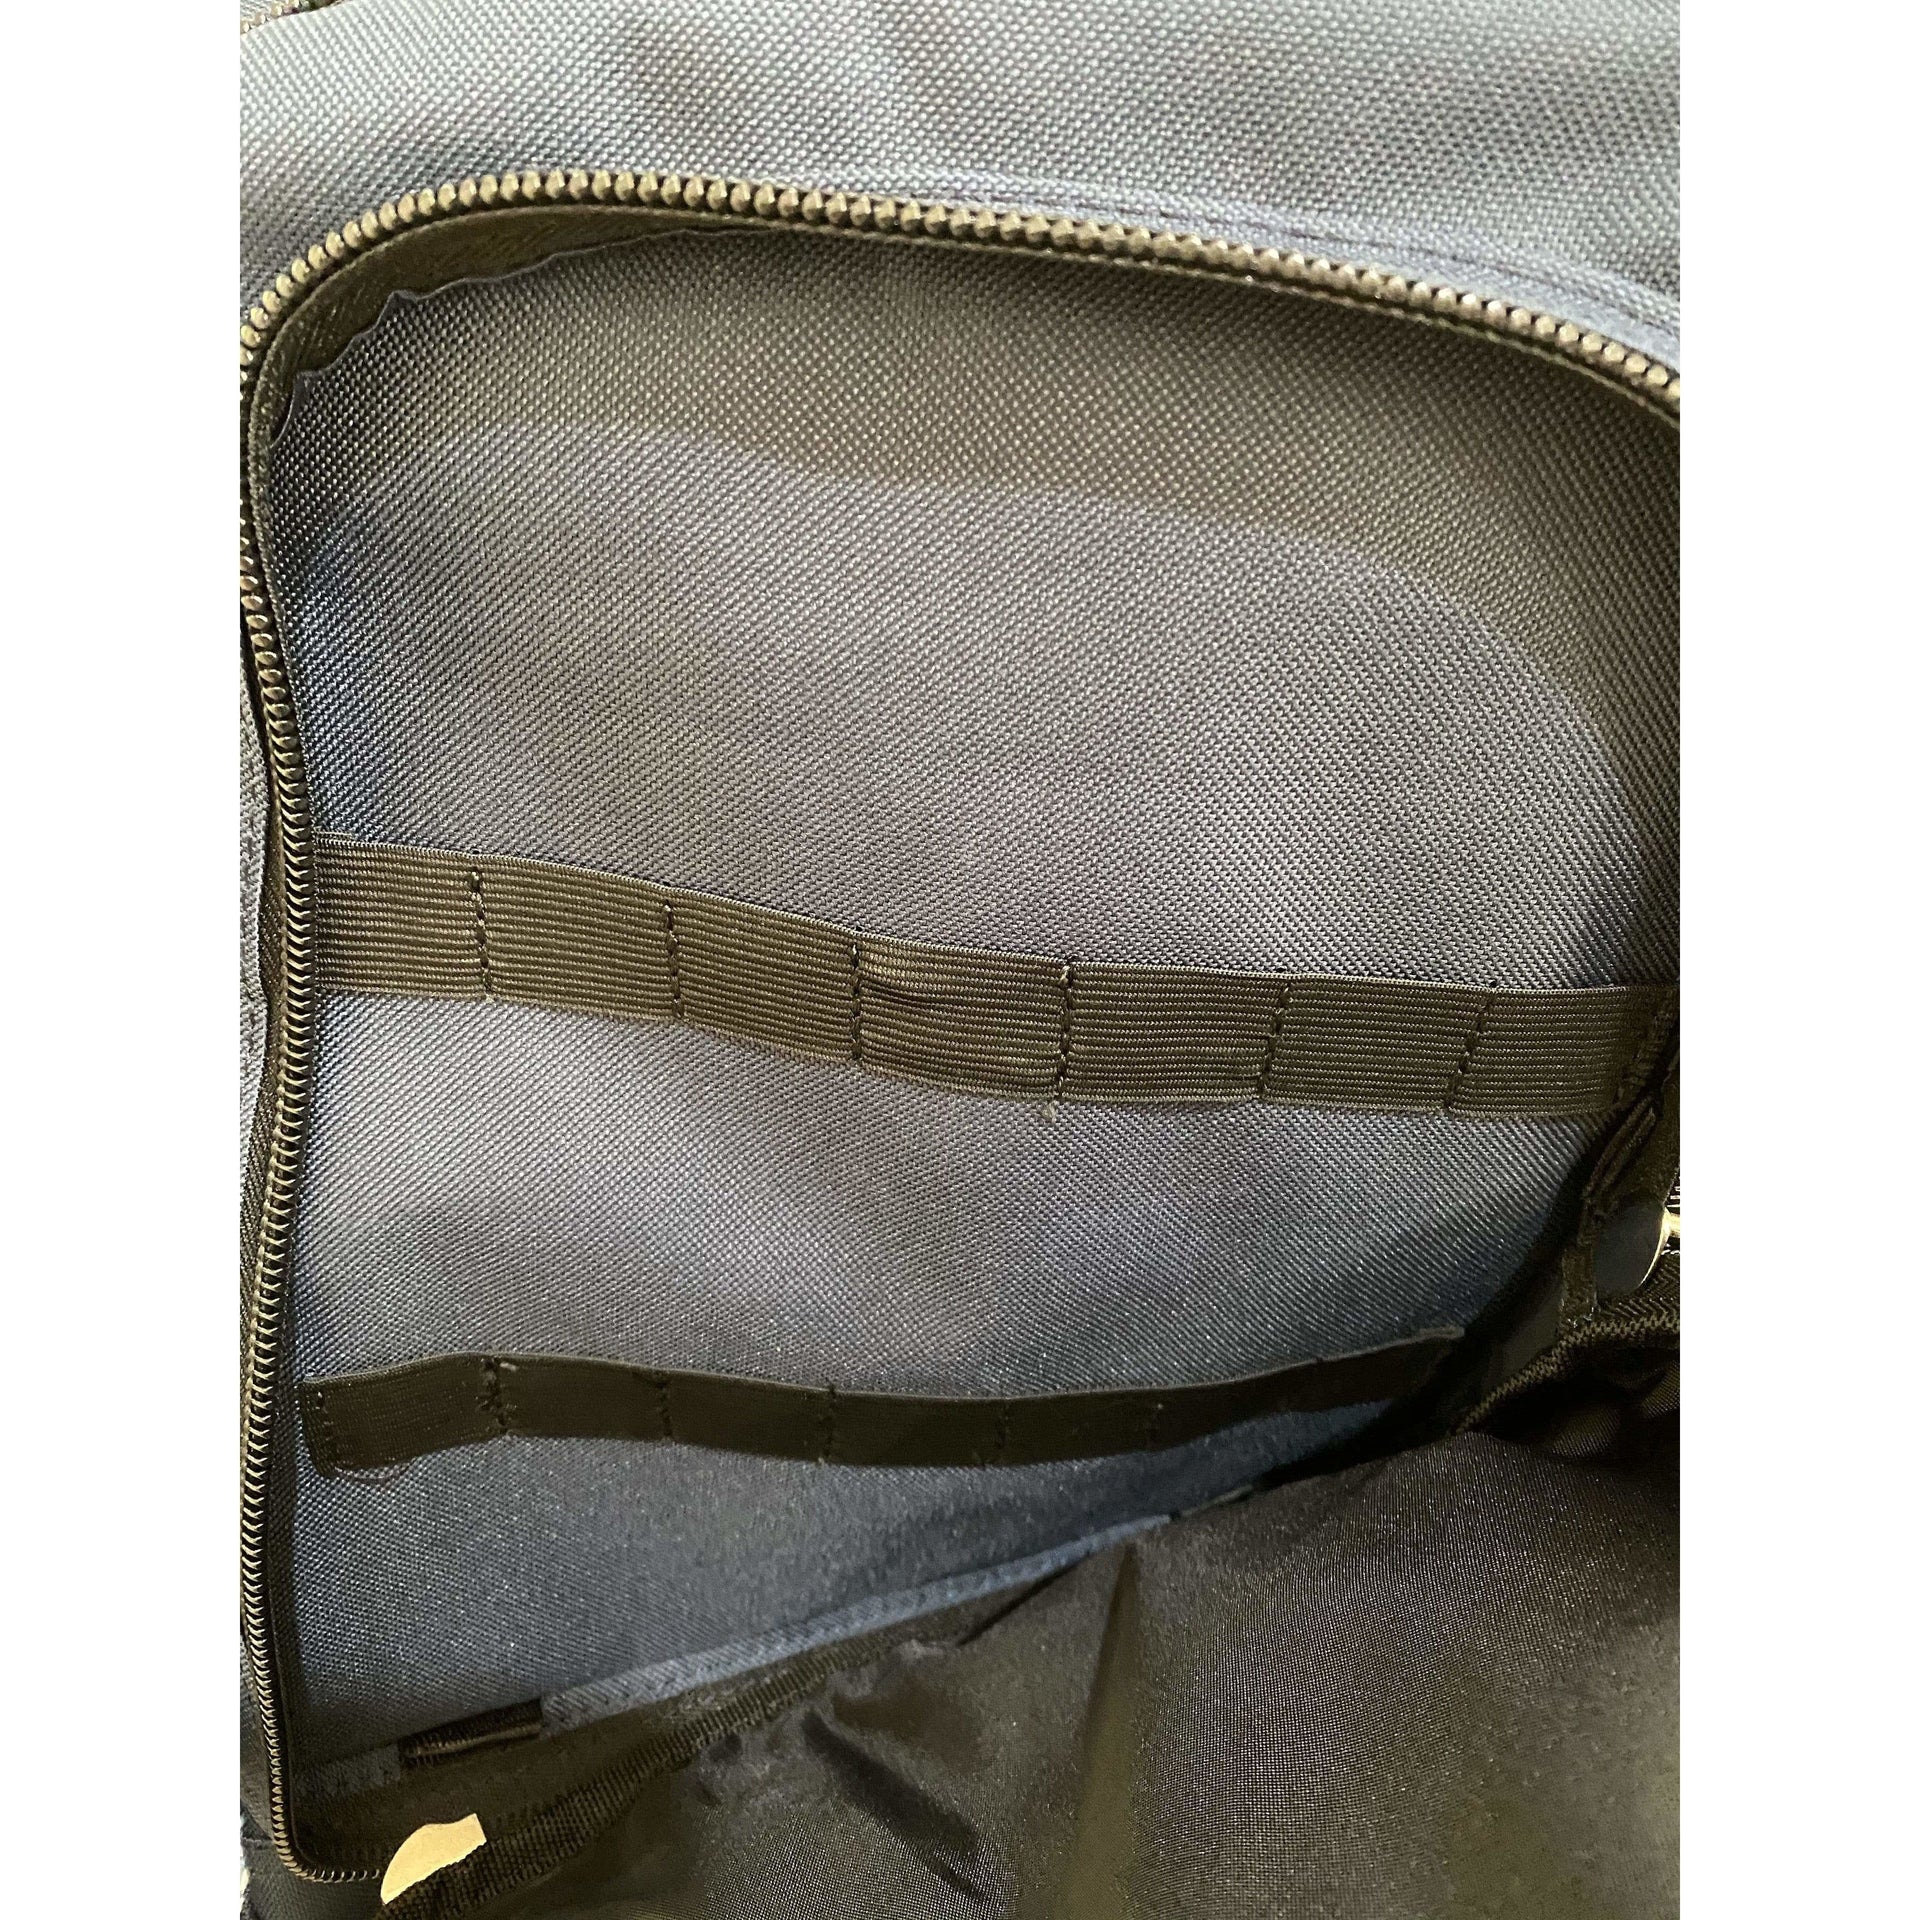 Premium Medical Backpack - BAG ONLY